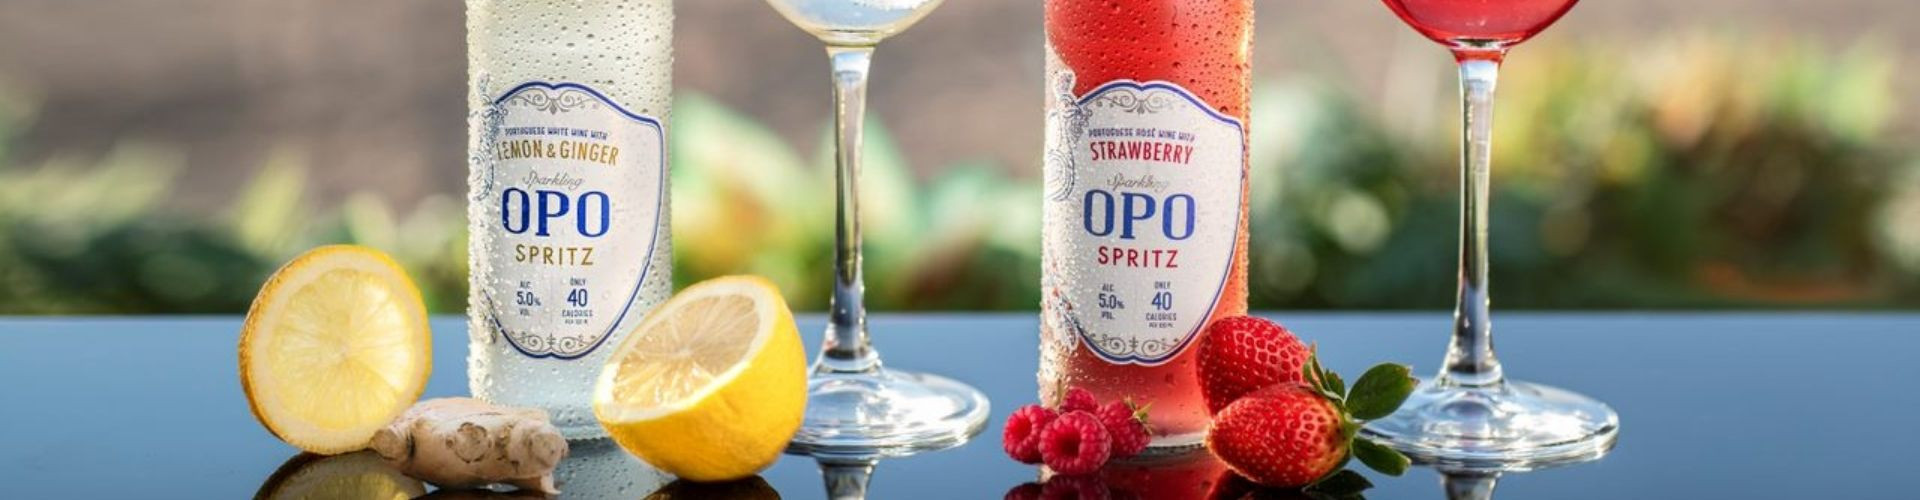 OPO Spritz - drink z portugalskiego wina i owoców